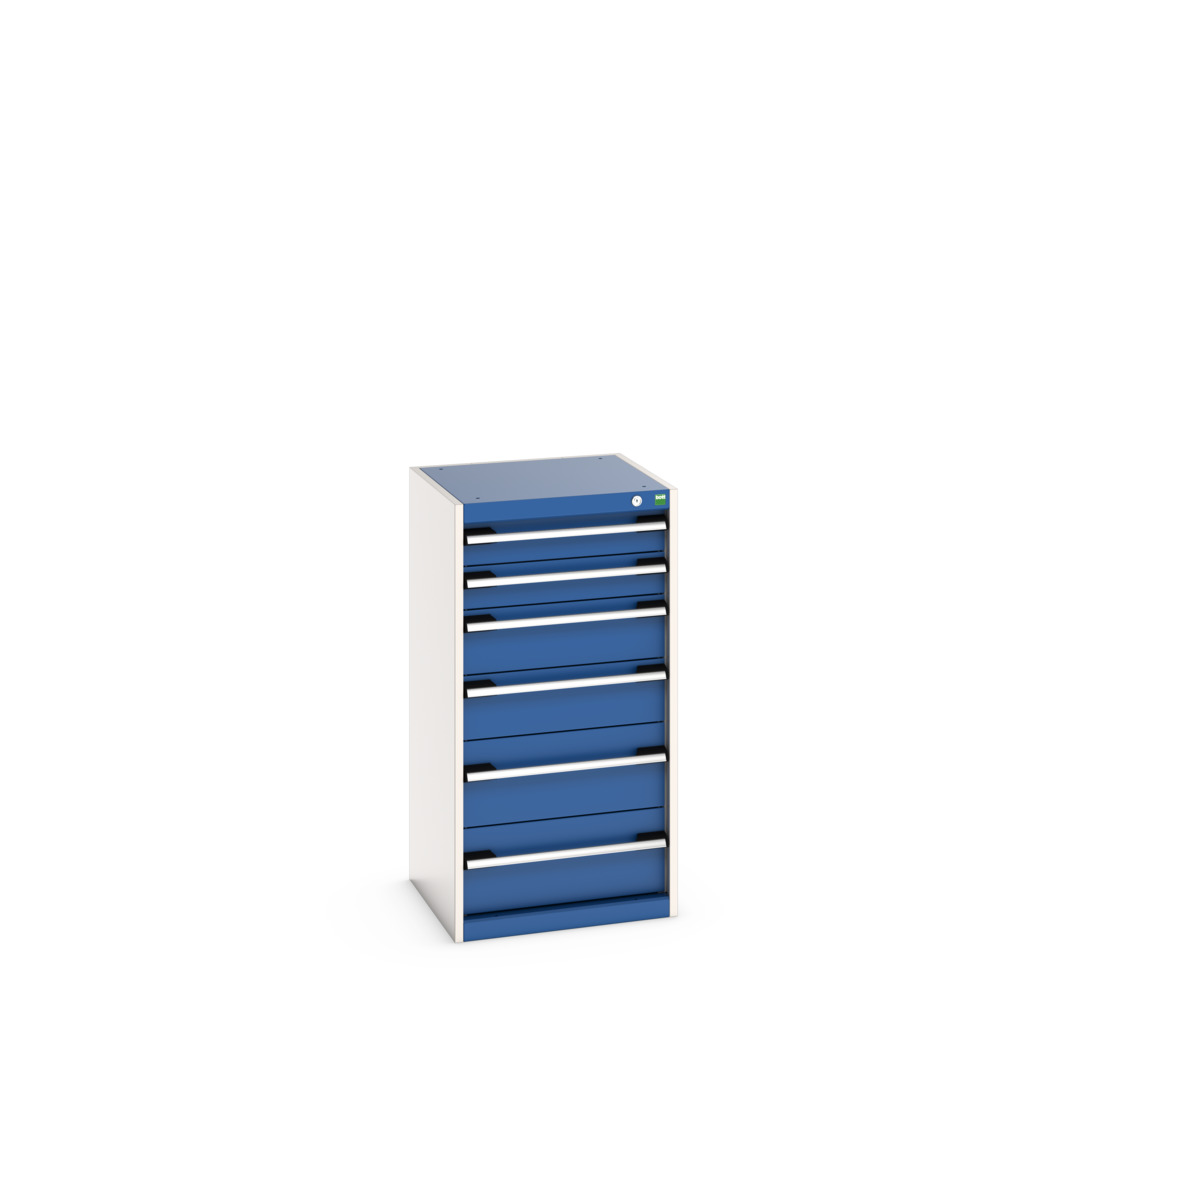 40010047.11V - cubio drawer cabinet